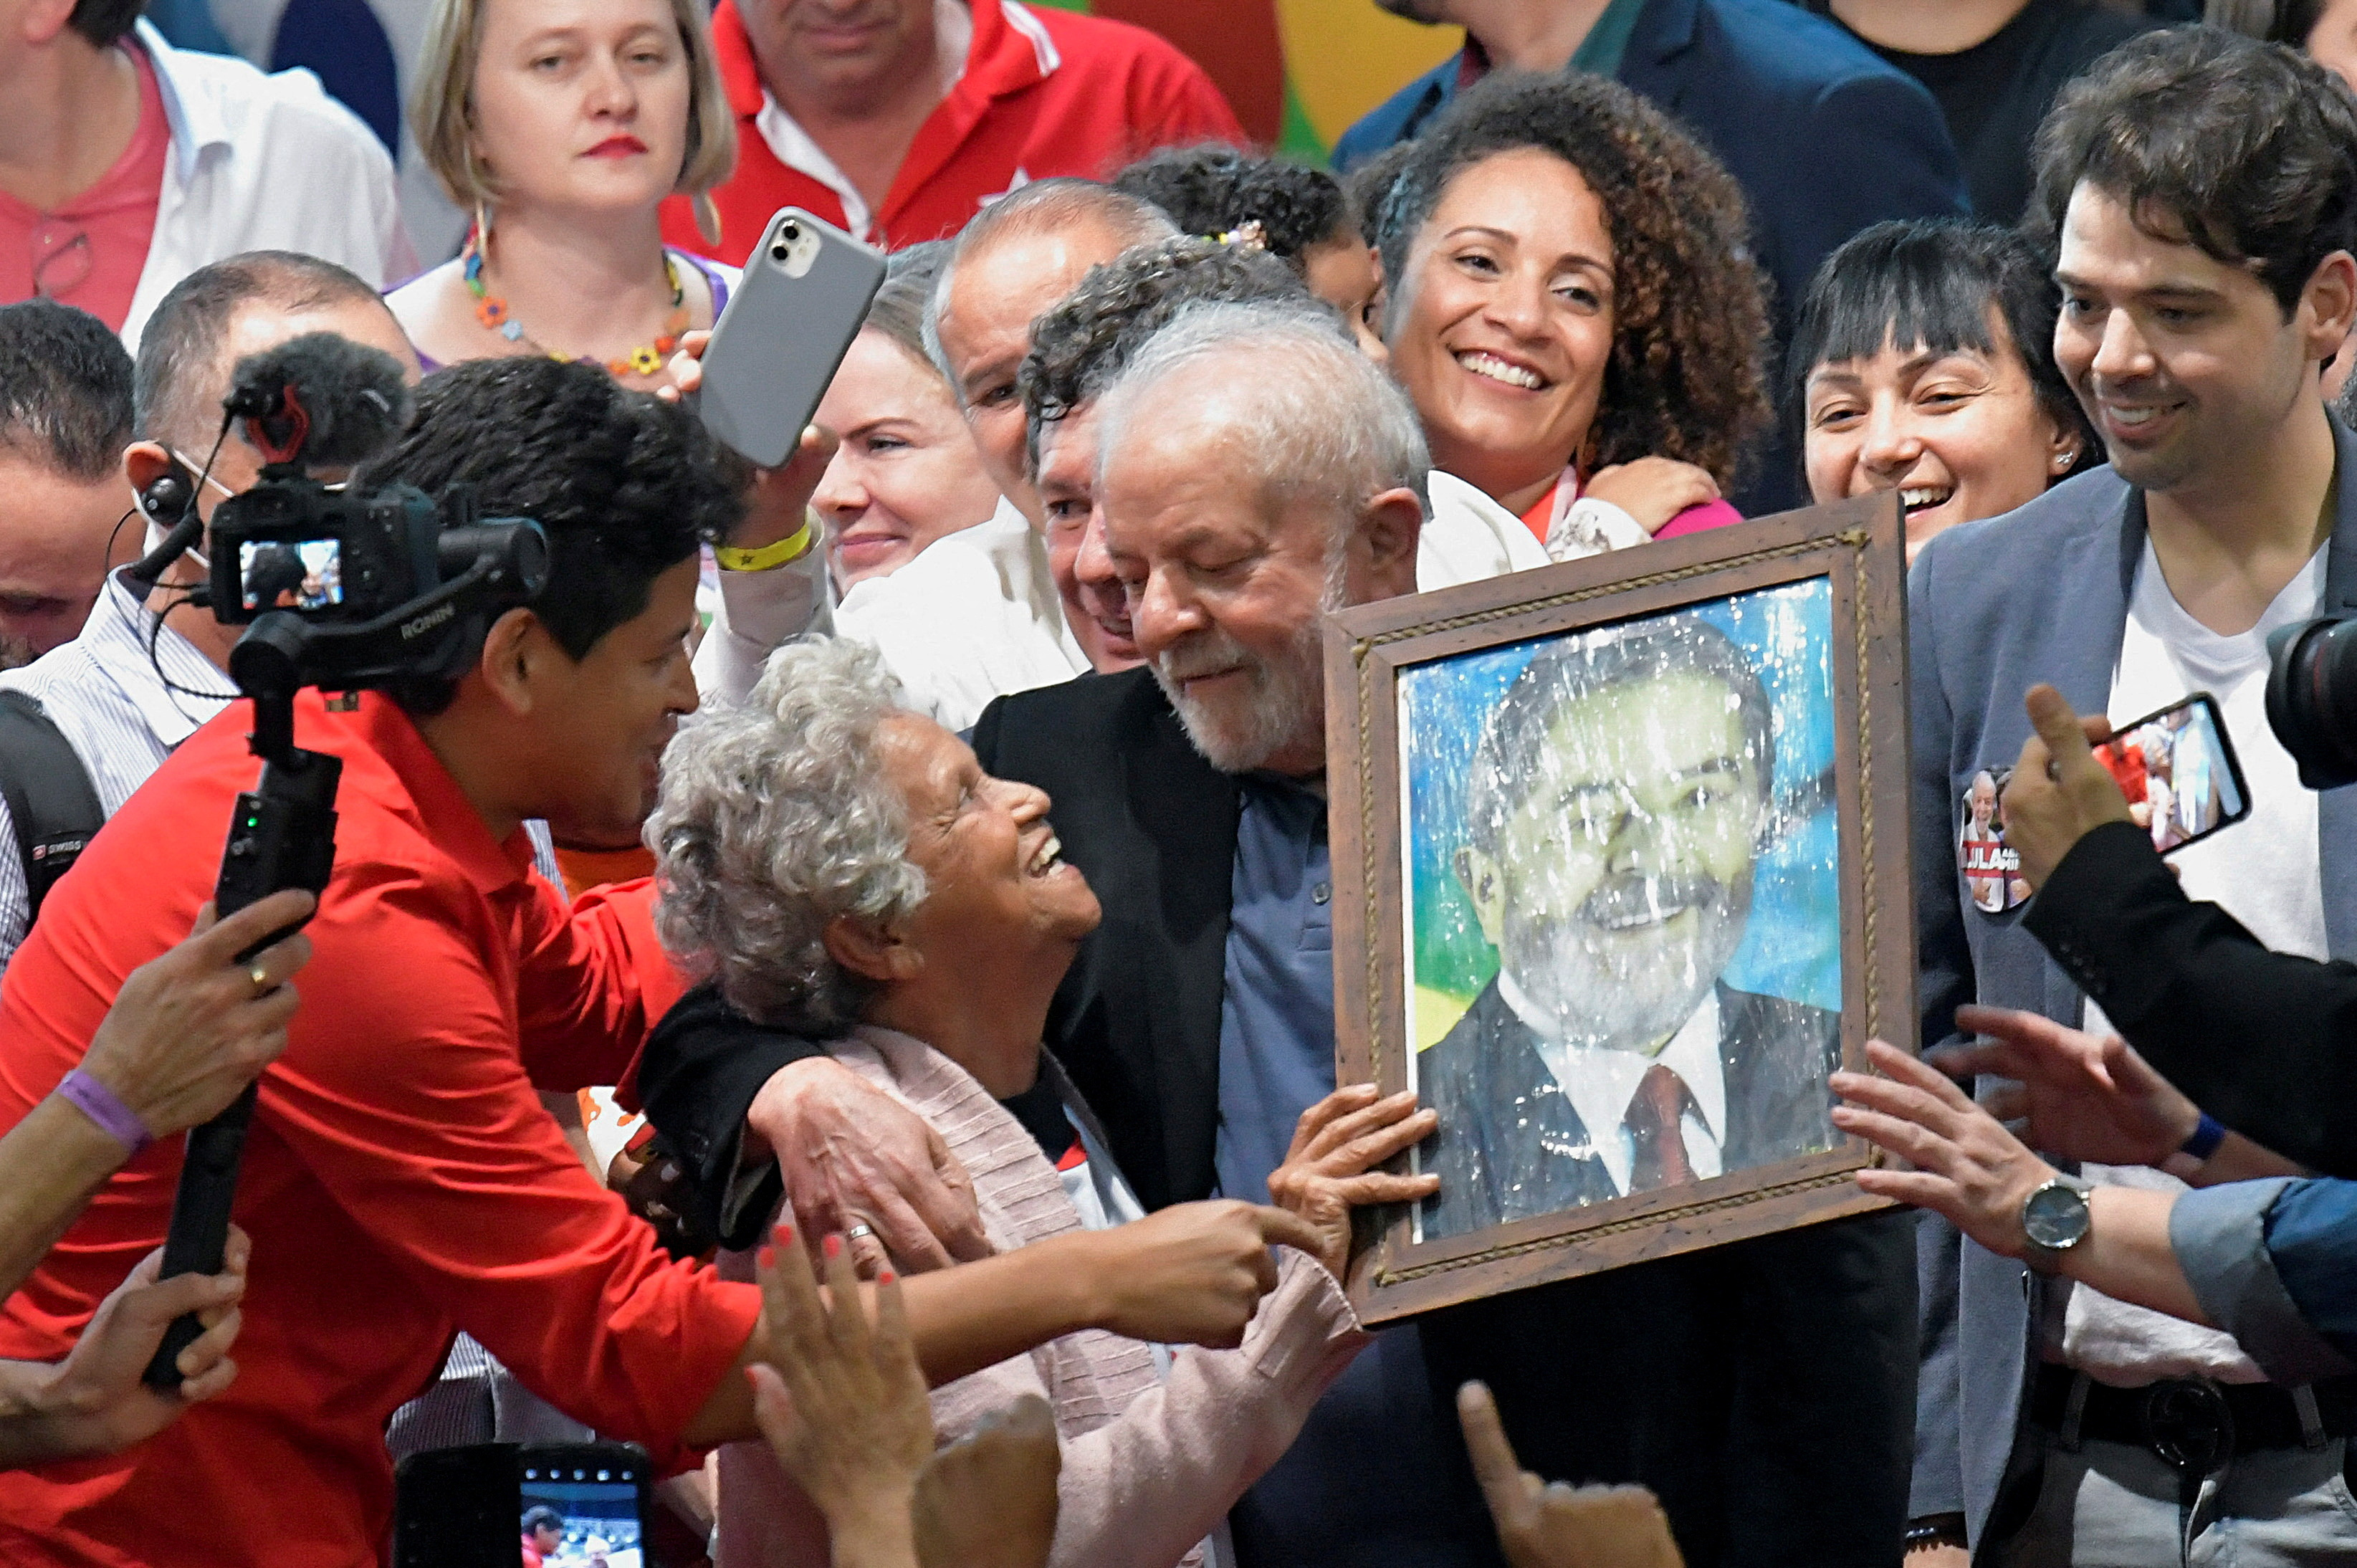 رئیس جمهور سابق برزیل، لوئیز ایناسیو لولا داسیلوا، کاندیدای پیشین ریاست جمهوری در مراسم Lula abraca Minas (لولا میناس را در آغوش می گیرد) شرکت می کند.